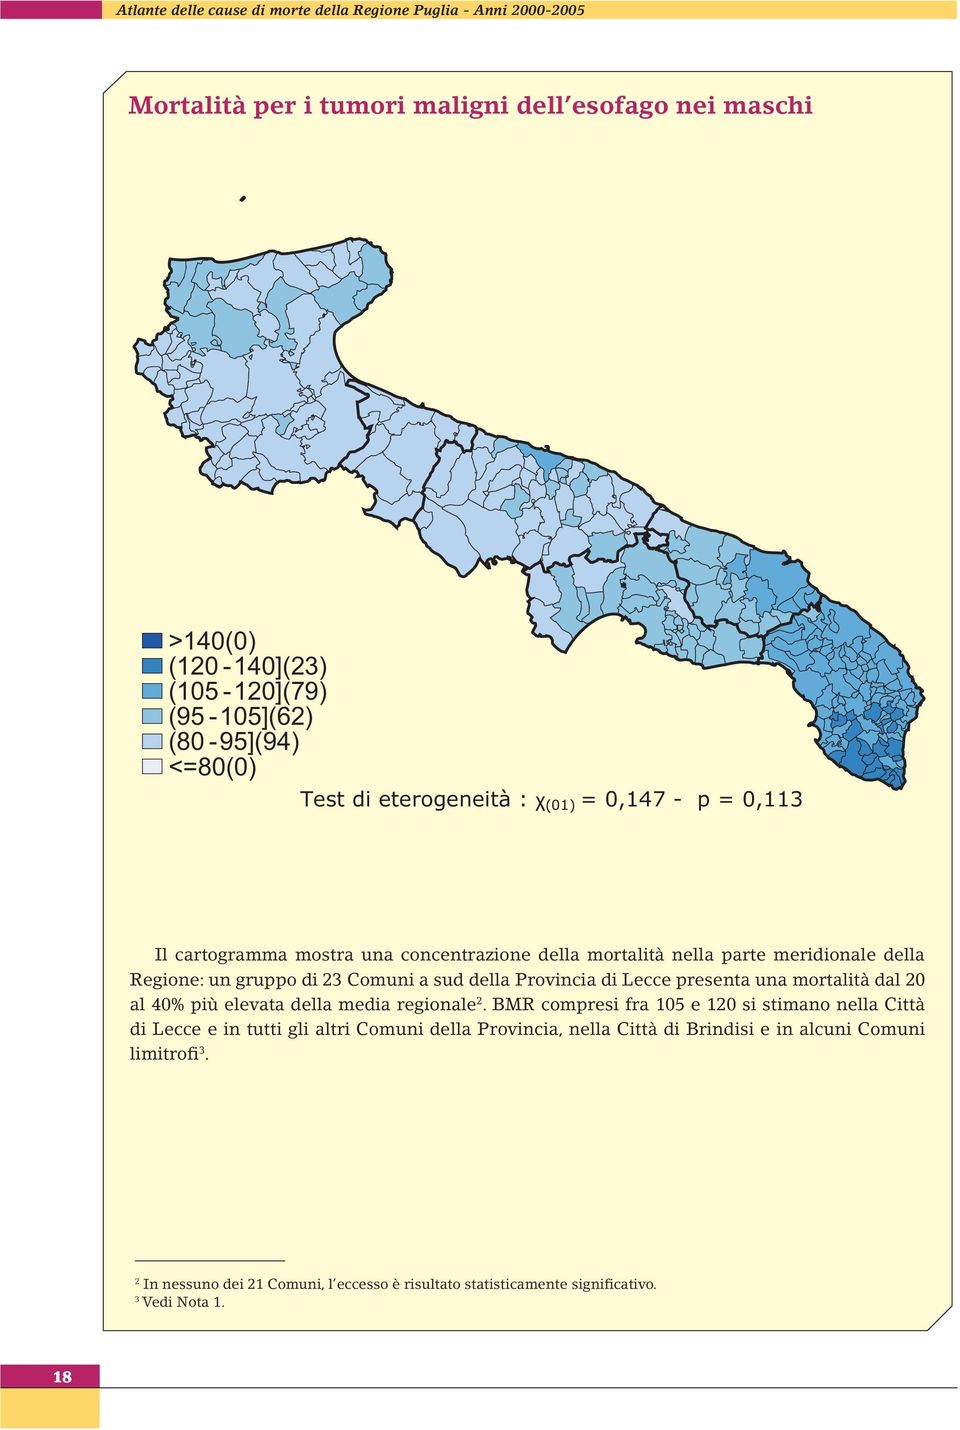 Comuni a sud della Provincia di Lecce presenta una mortalità dal 20 al 40% più elevata della media regionale 2.